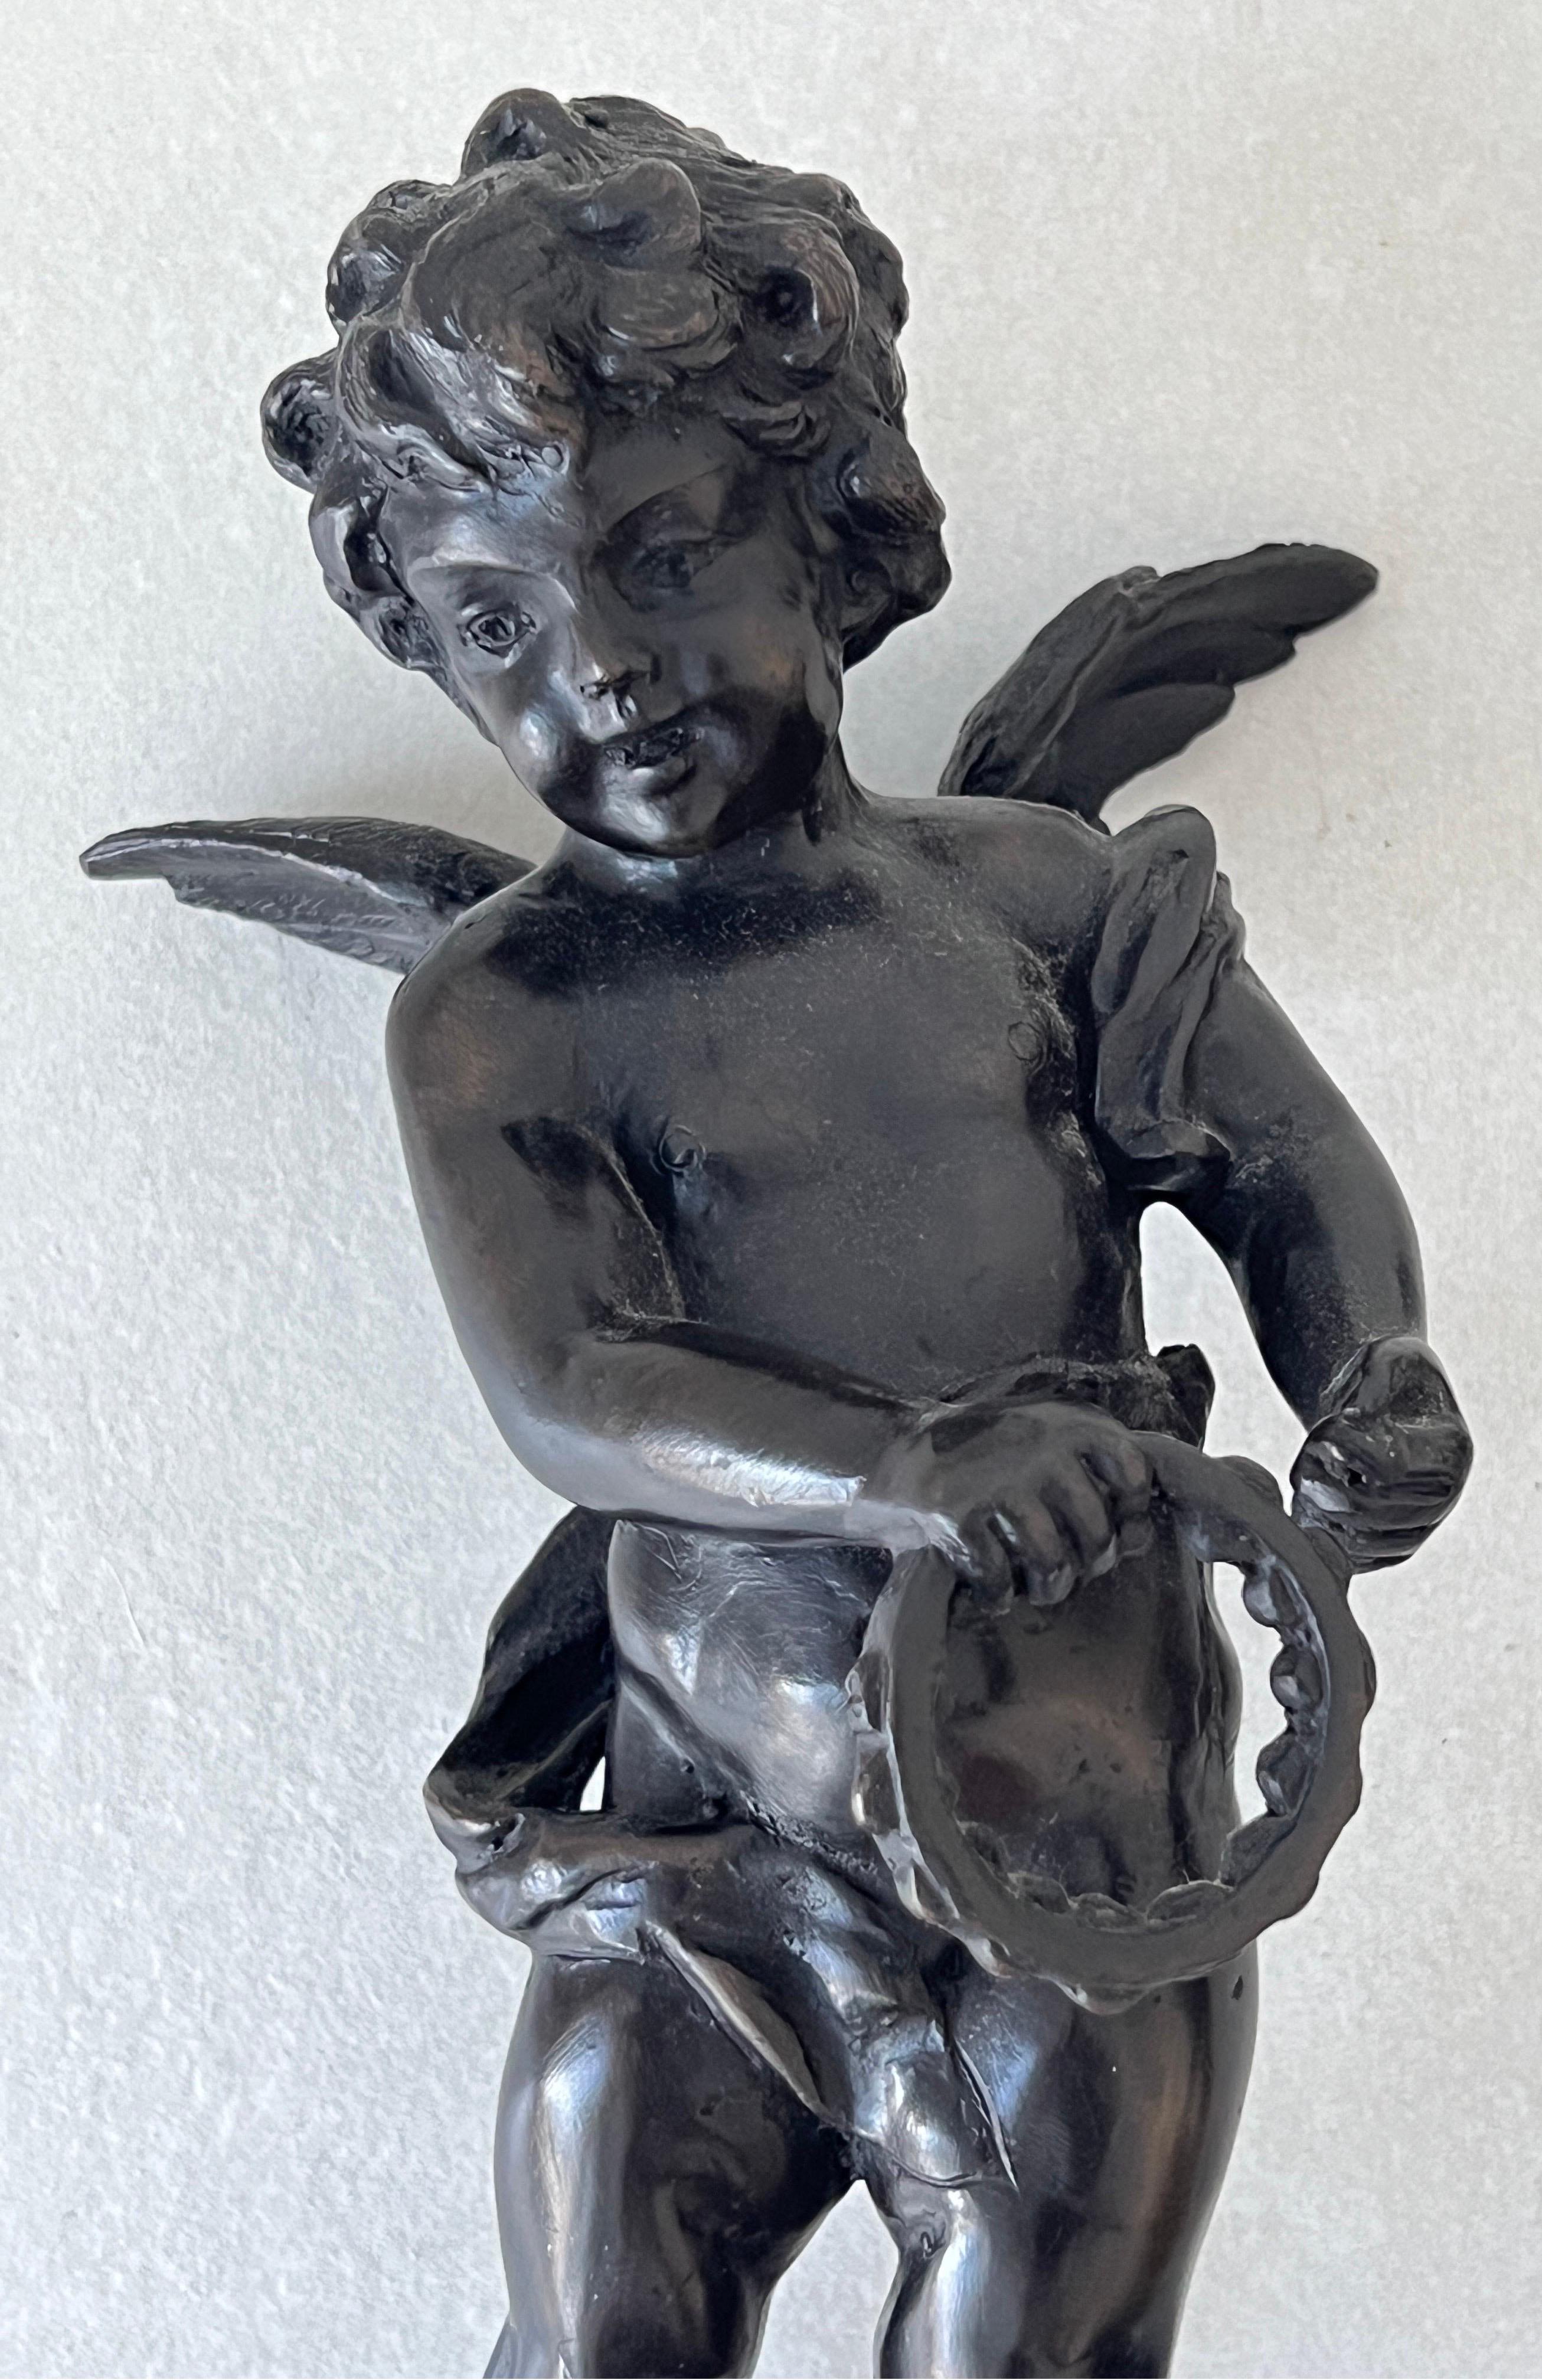 Kleine Engel, die Trommel und Zimbel spielen, von Hippolyte Francois Moreau, signiert.
Hand aus patinierter Bronze.
Bildhauerei und Heißgießerei, die nach der Methode des Wachsausschmelzverfahrens durchgeführt wird.
